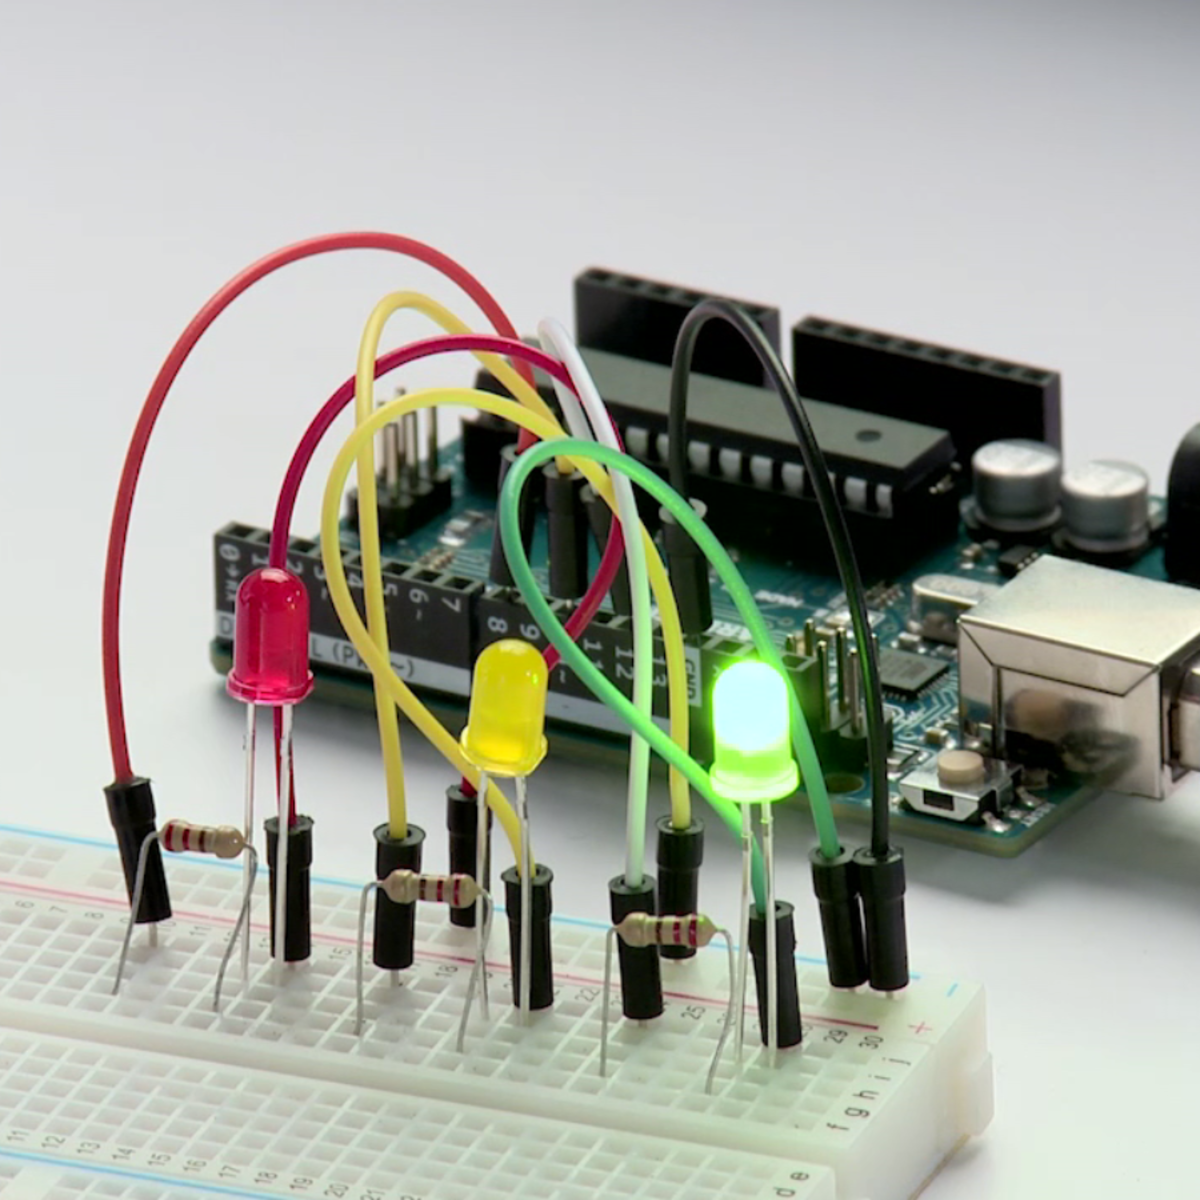 Строим роботов и другие устройства на Arduino. От светофора до 3D-принтера